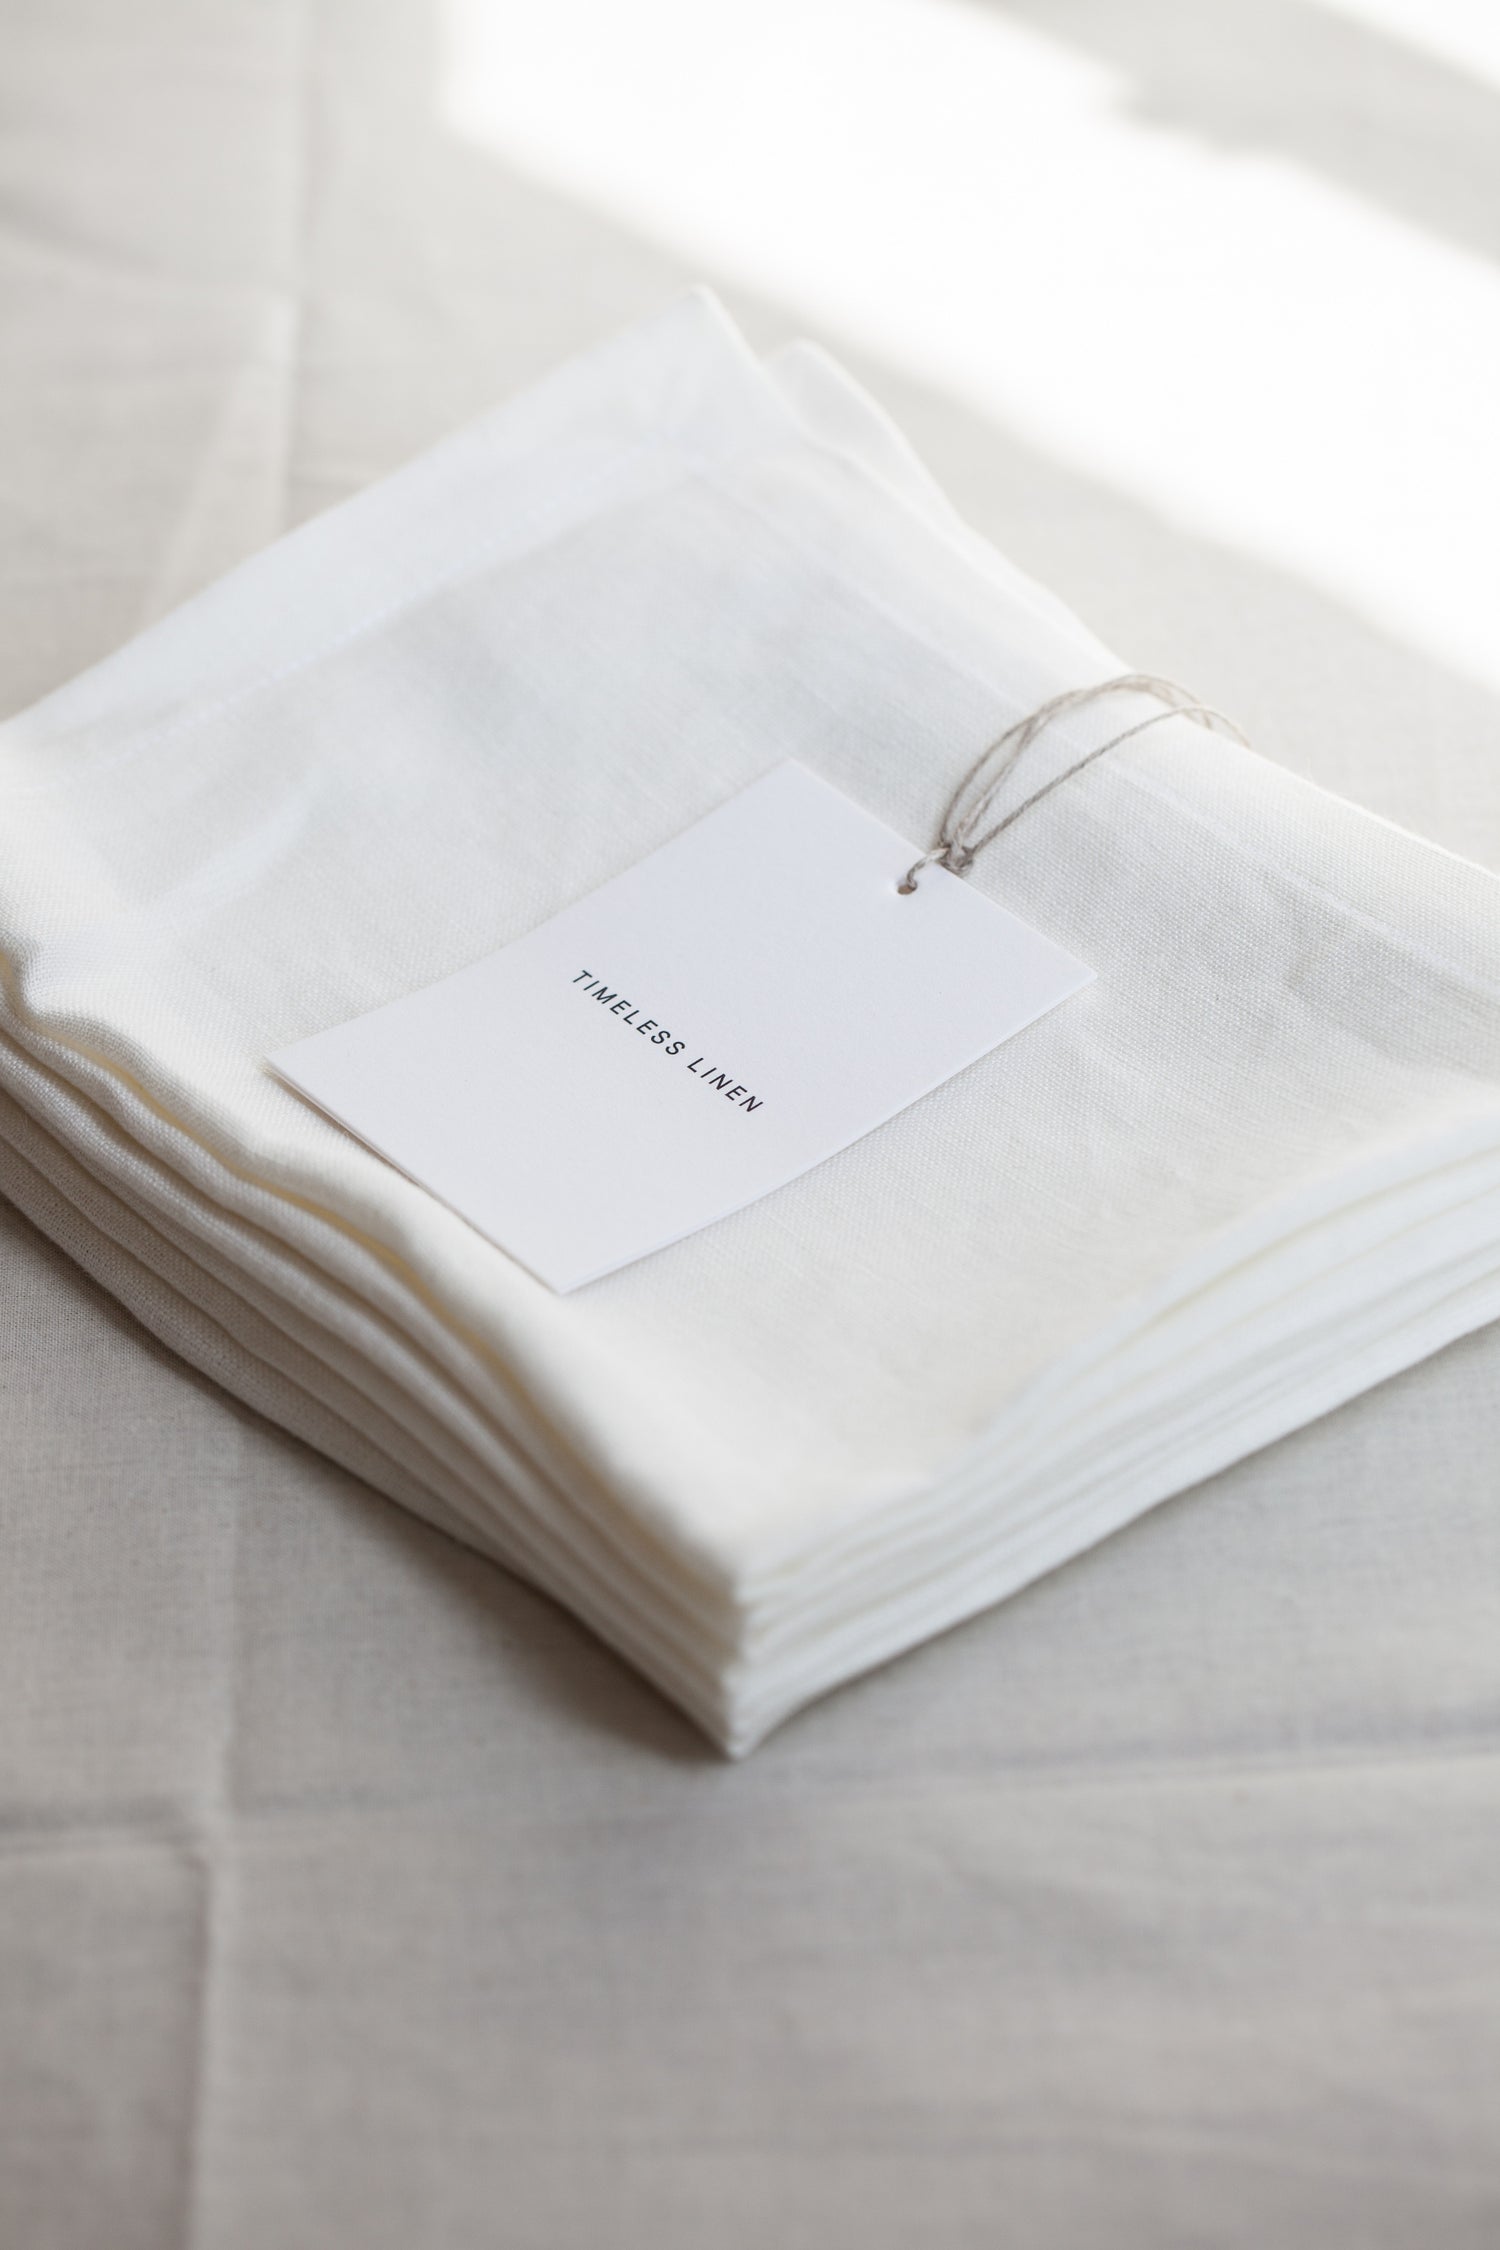 Linen Napkin by Timeless Linen Off White